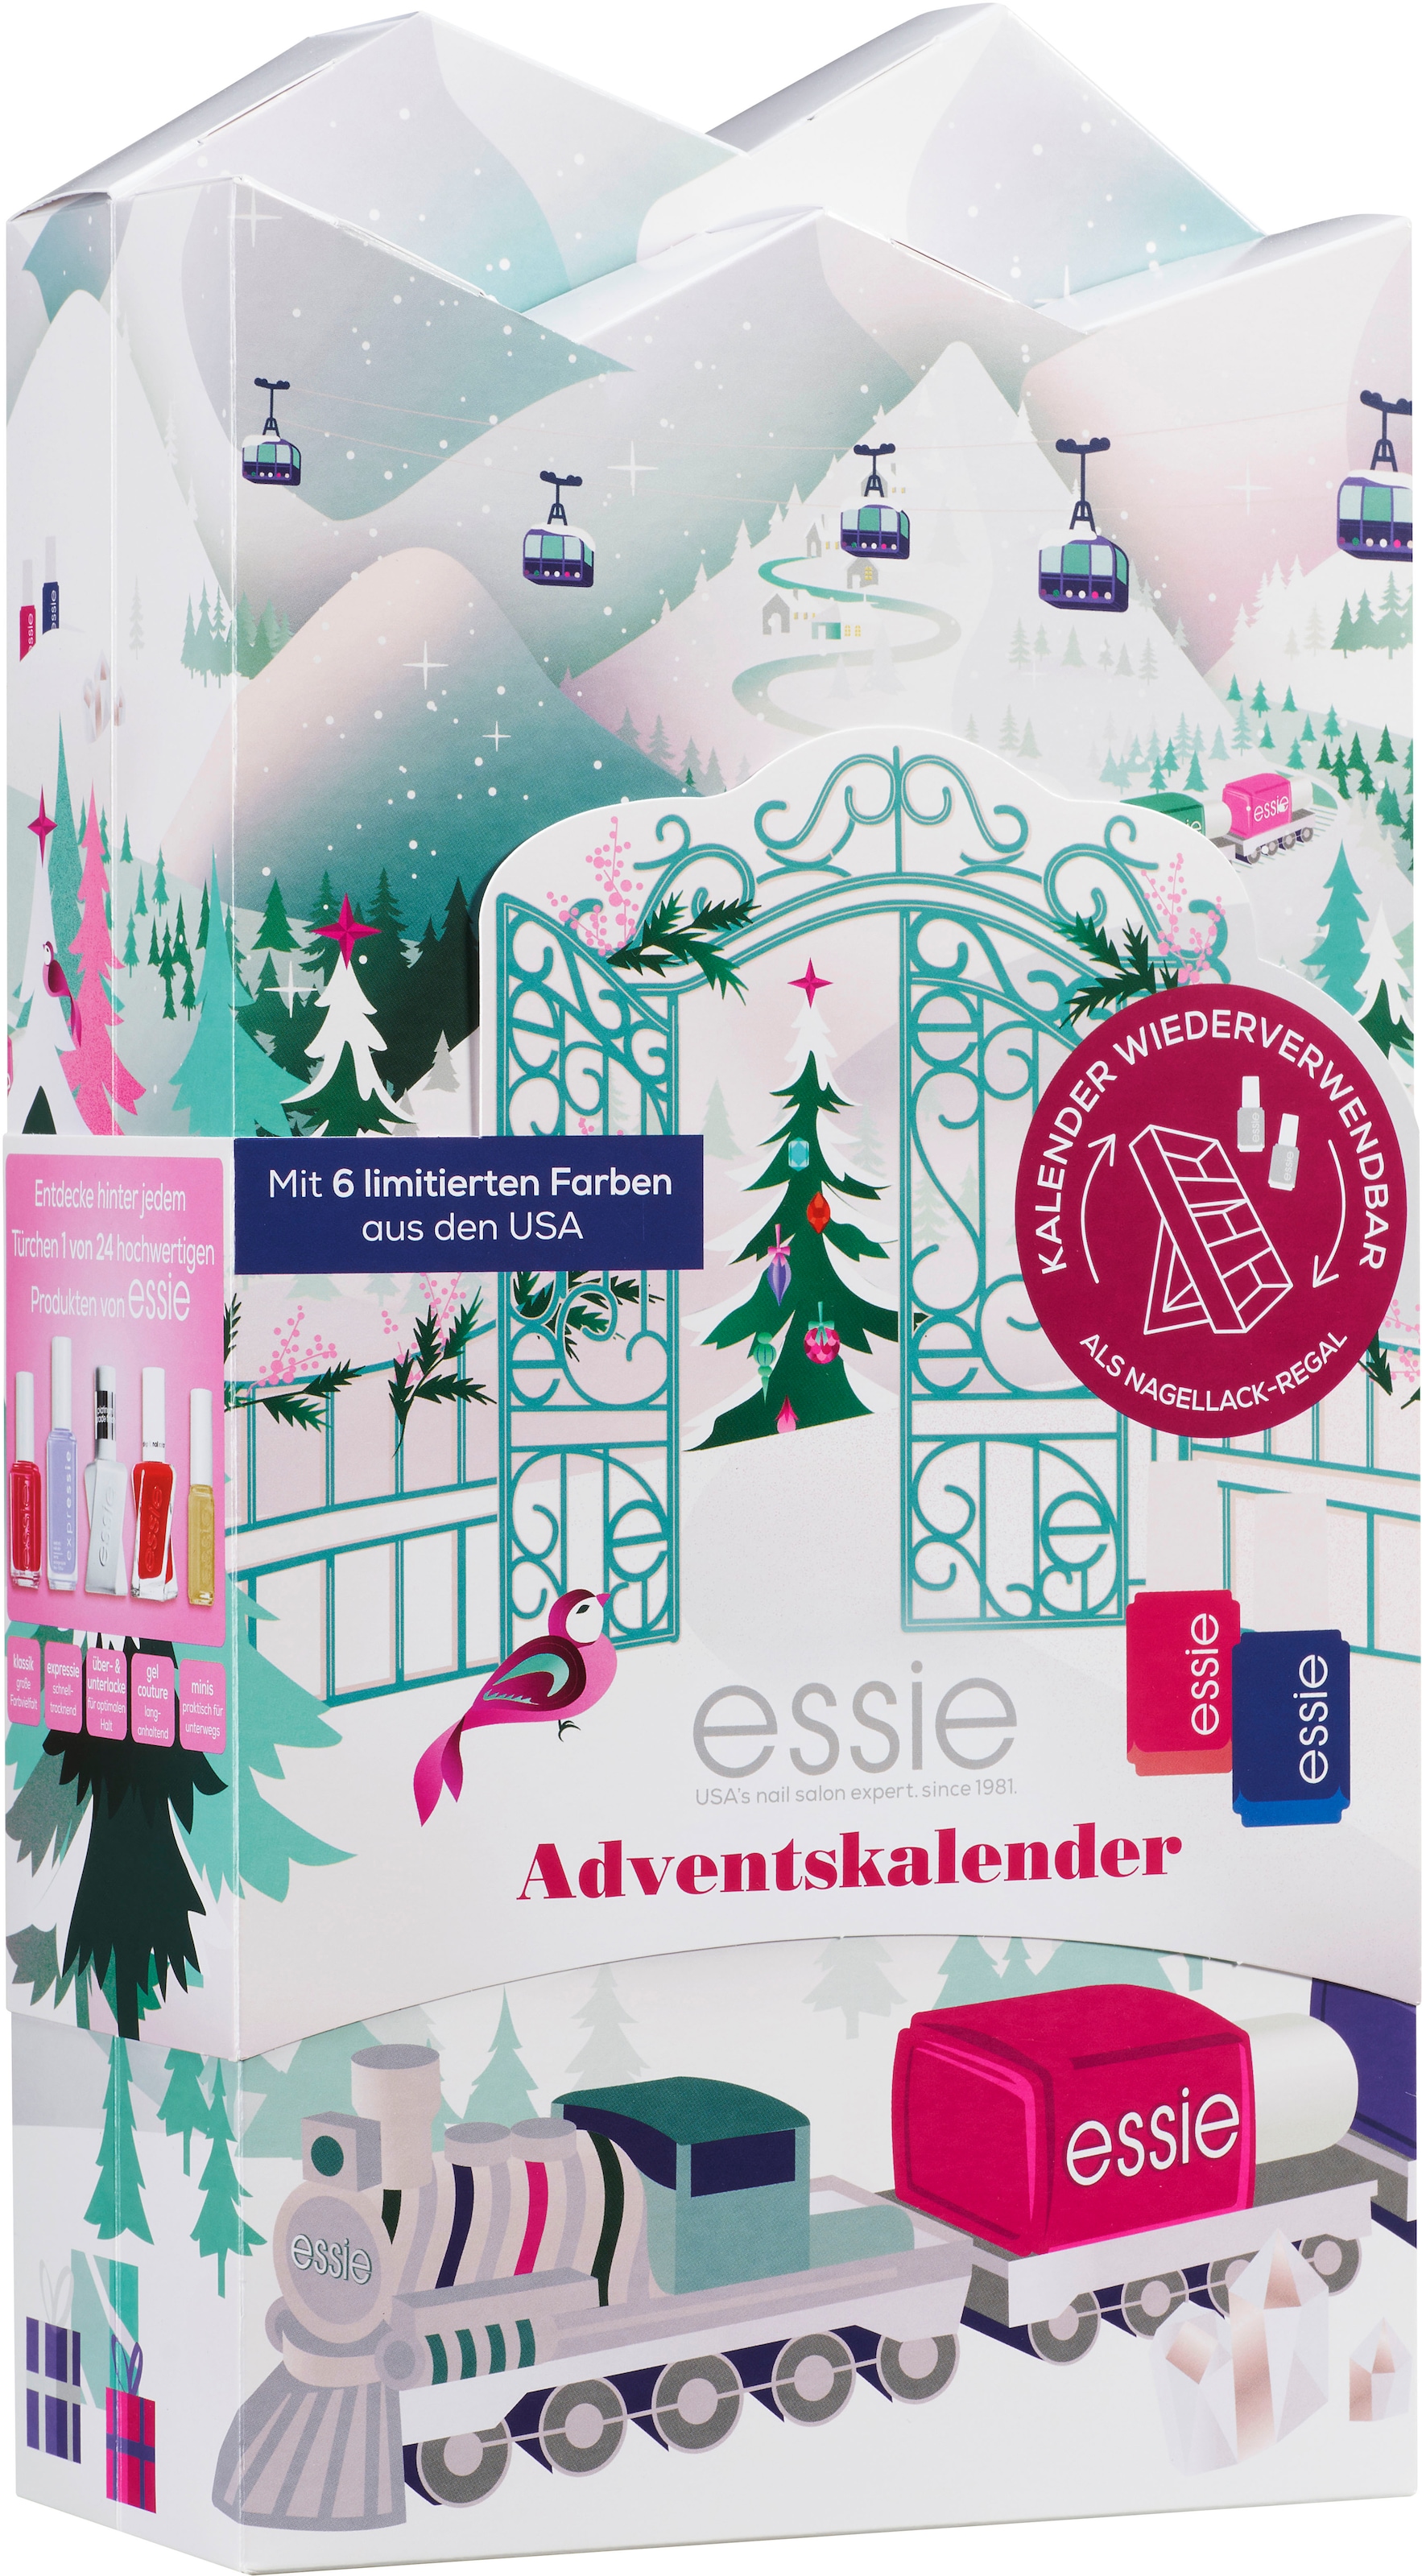 essie Adventskalender »Nagellack-Set« im Online-Shop kaufen